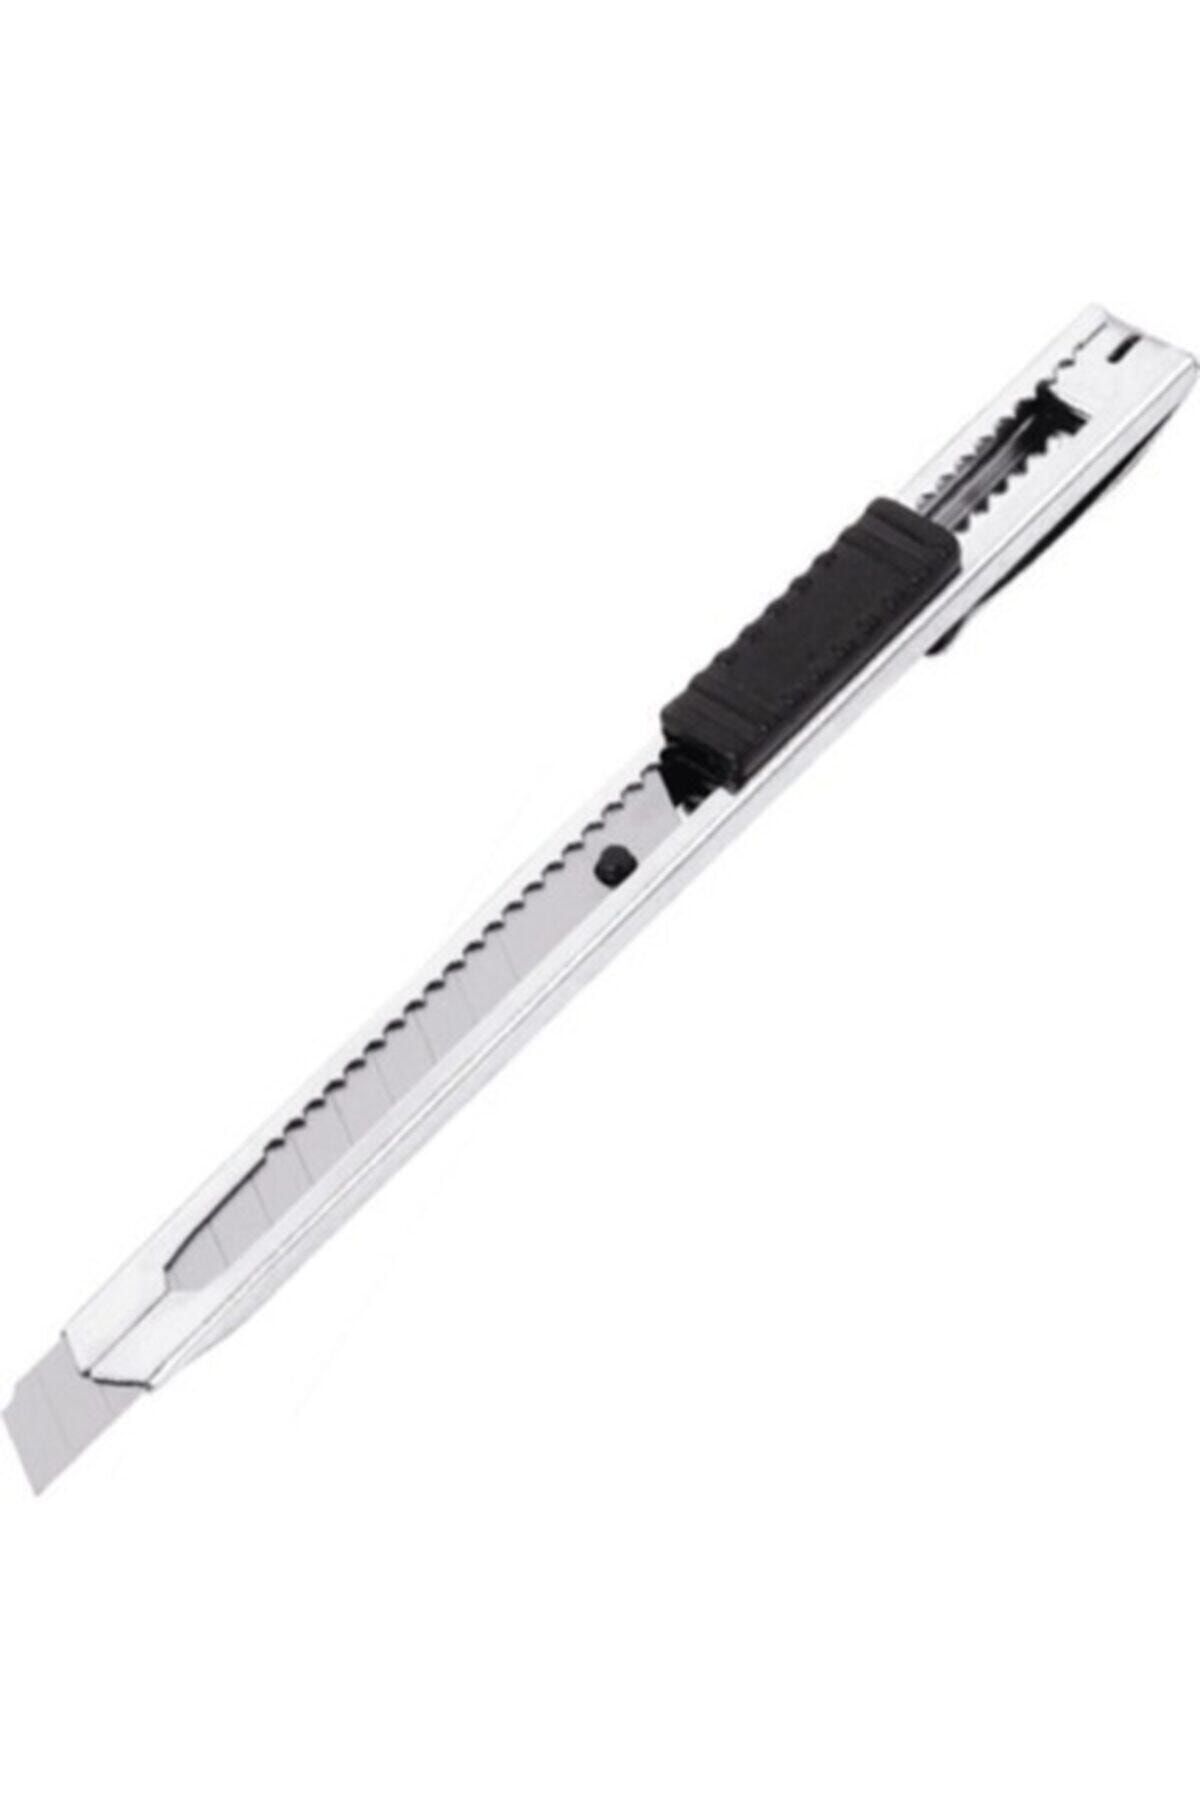 Real Özs Özs-9623 Küçük Metal Maket Bıçağı